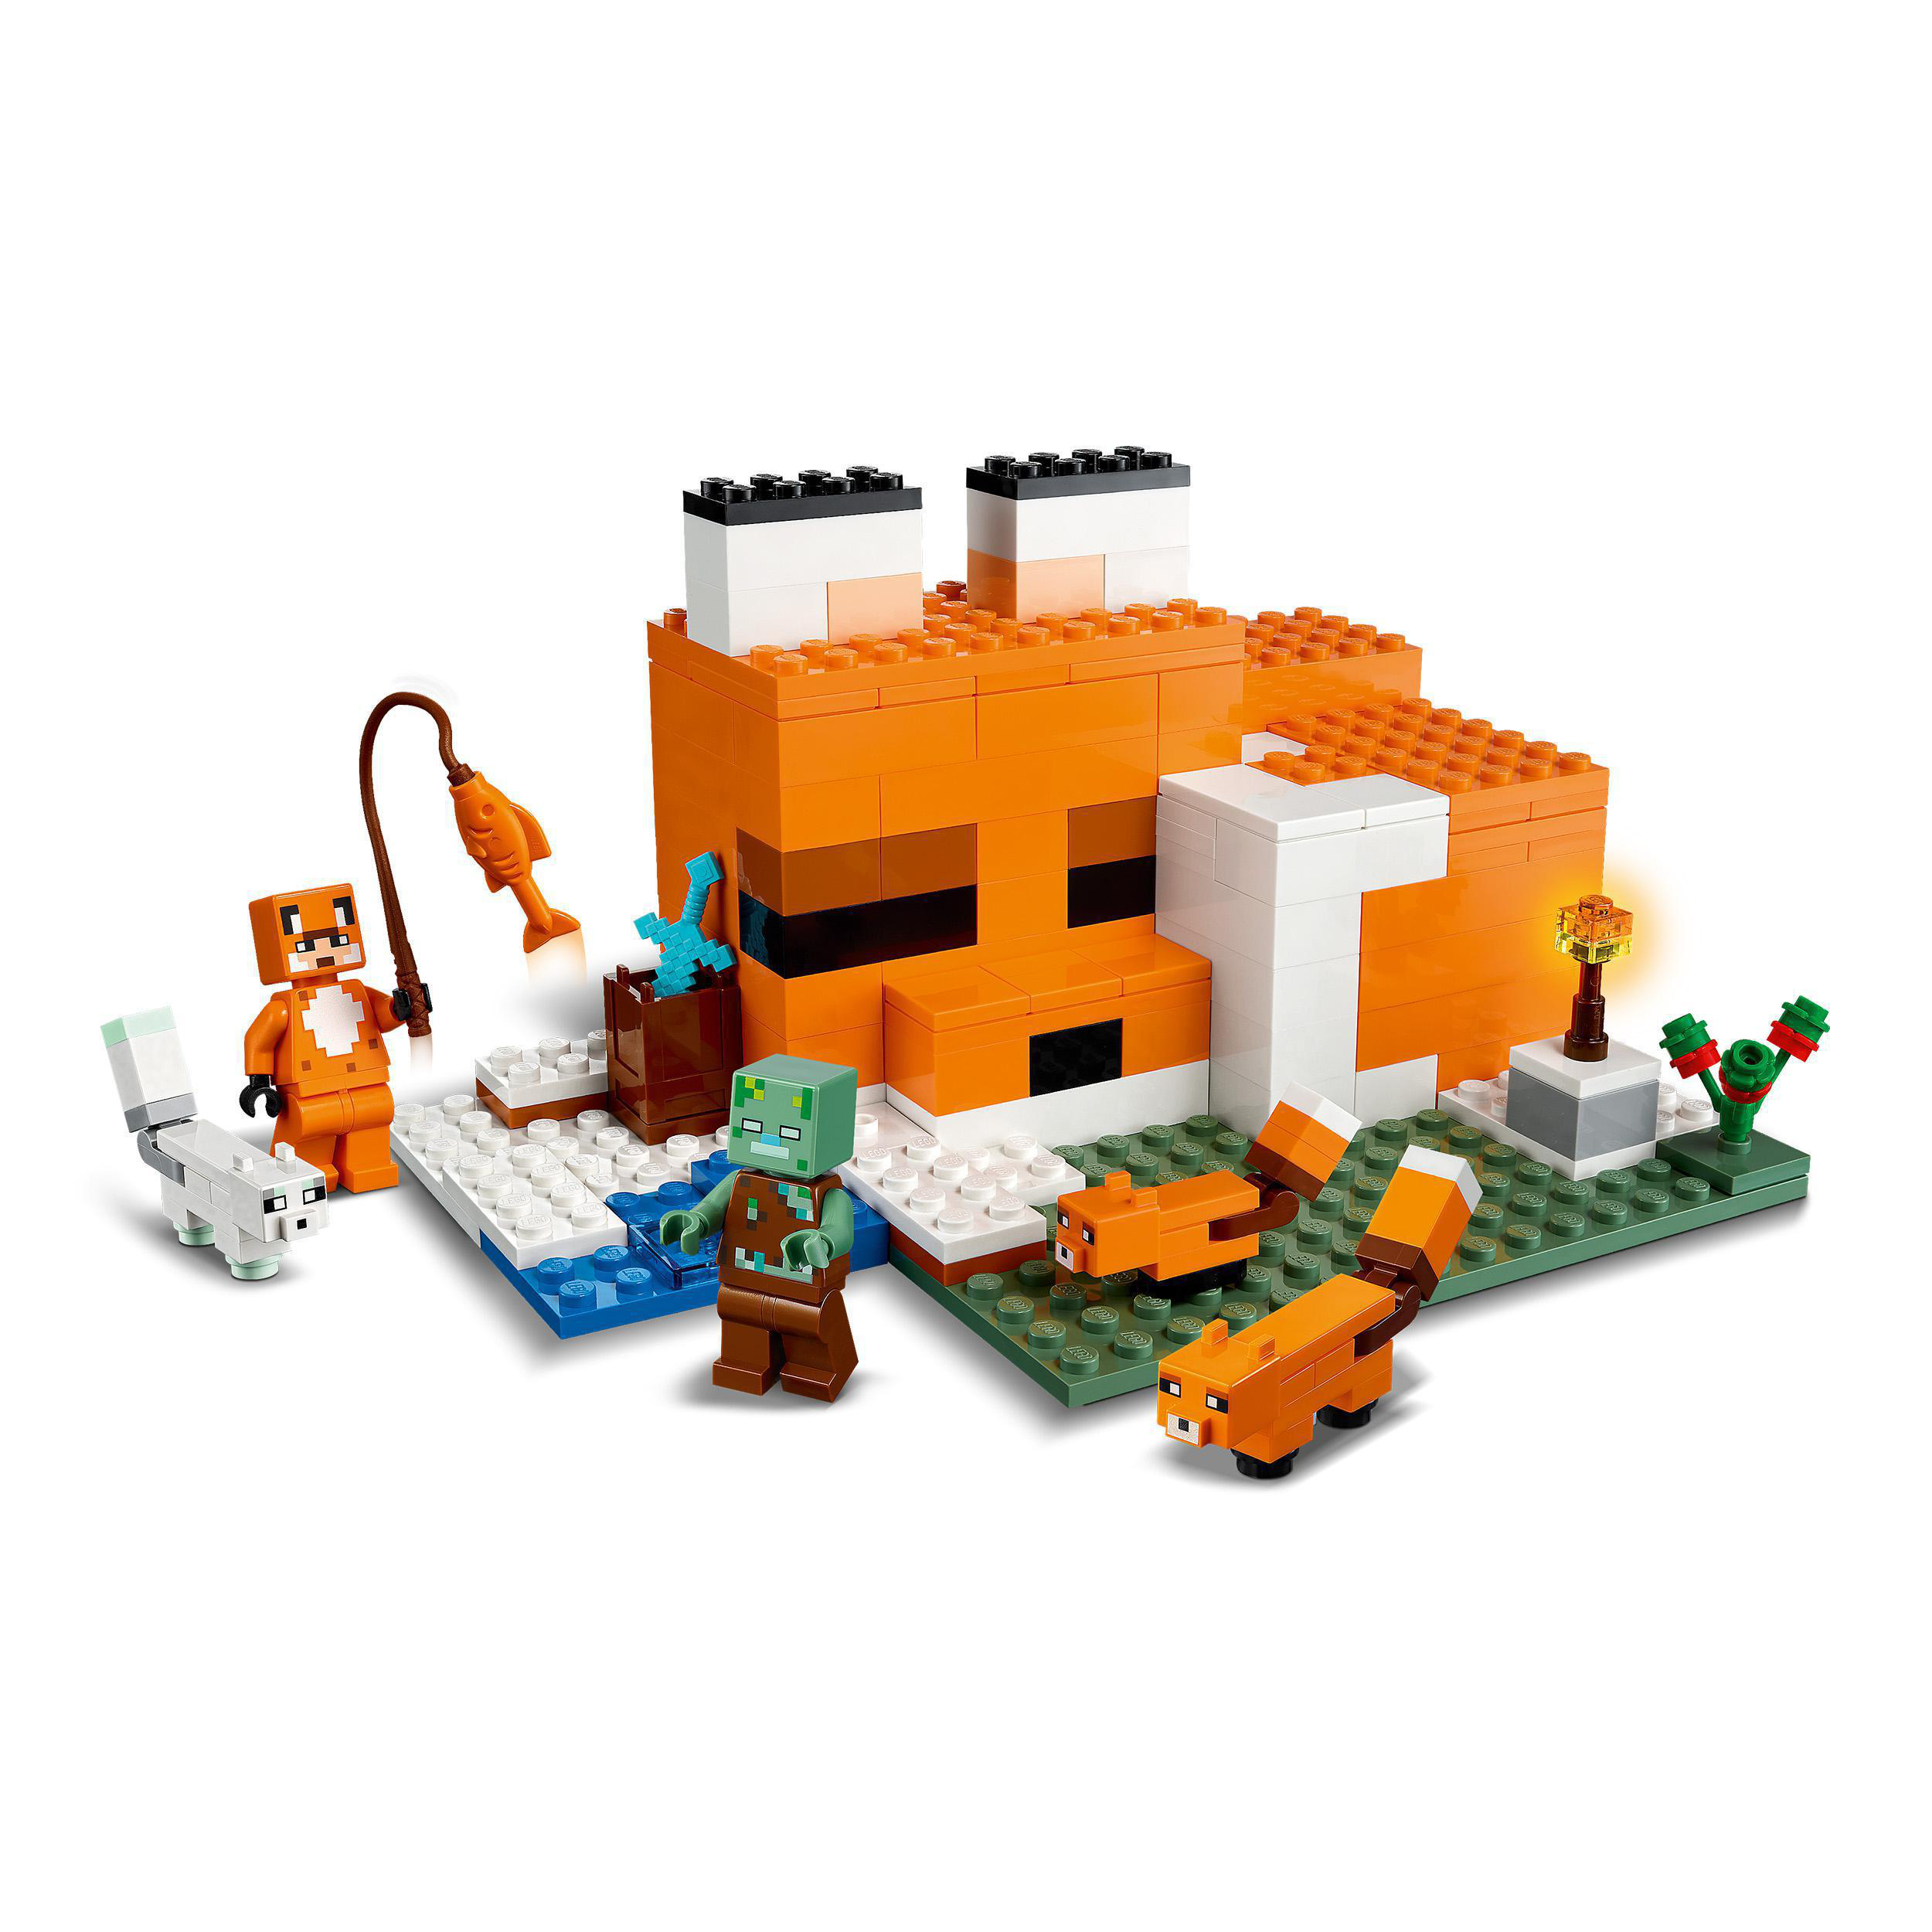 LEGO Minecraft 21178 Die Fuchs-Lodge Bausatz, Mehrfarbig